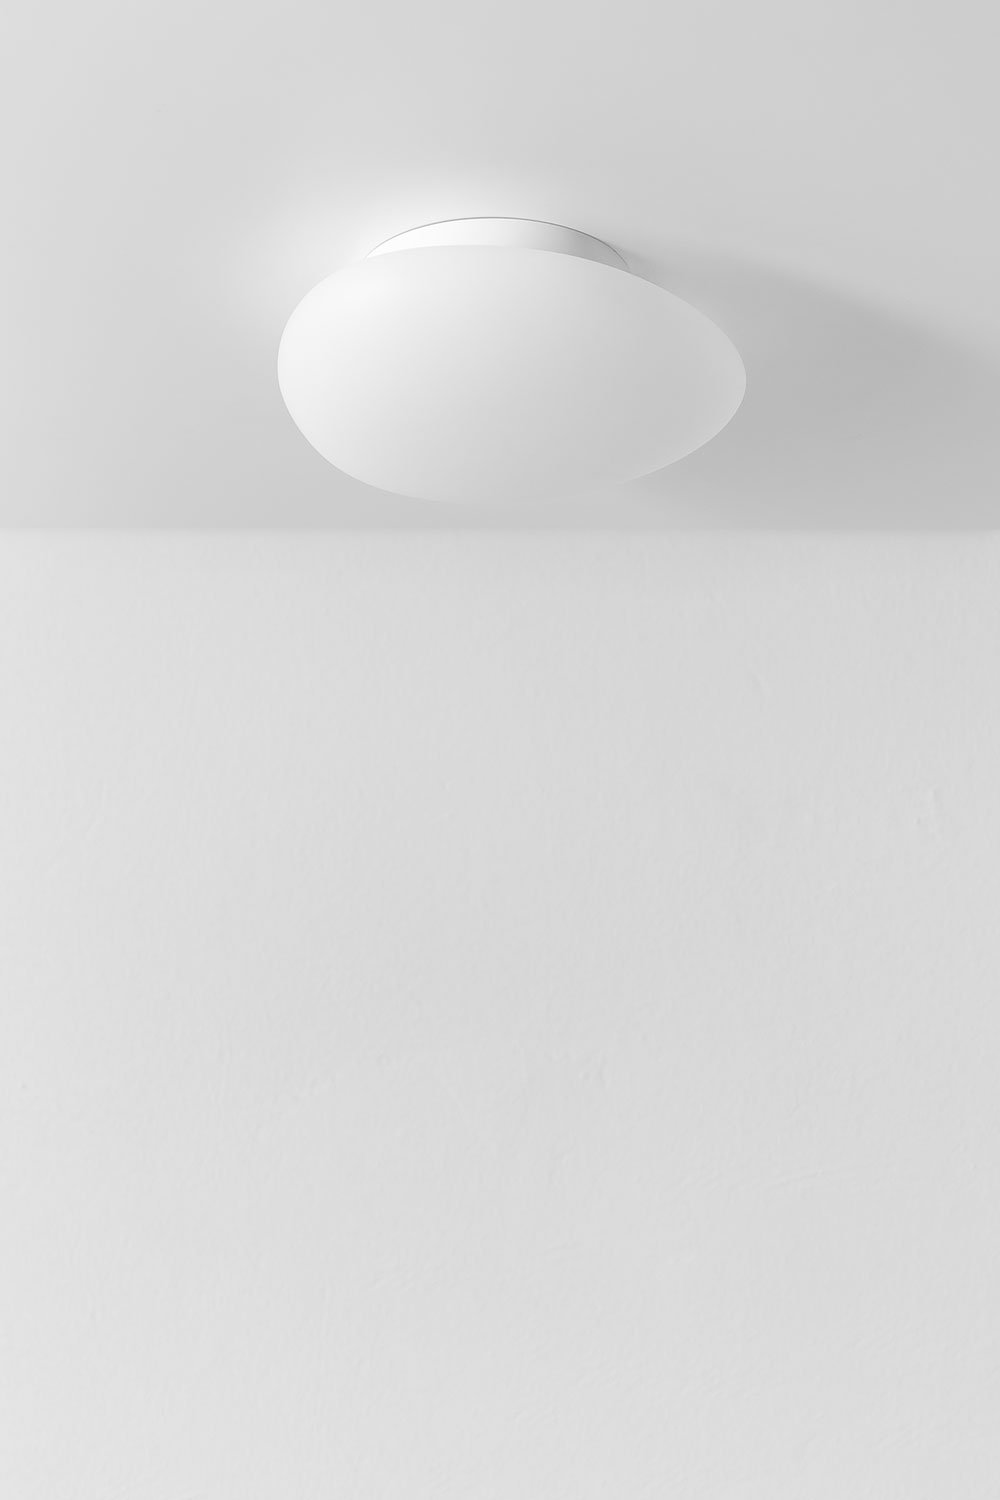 Maksim ceiling lamp, gallery image 1